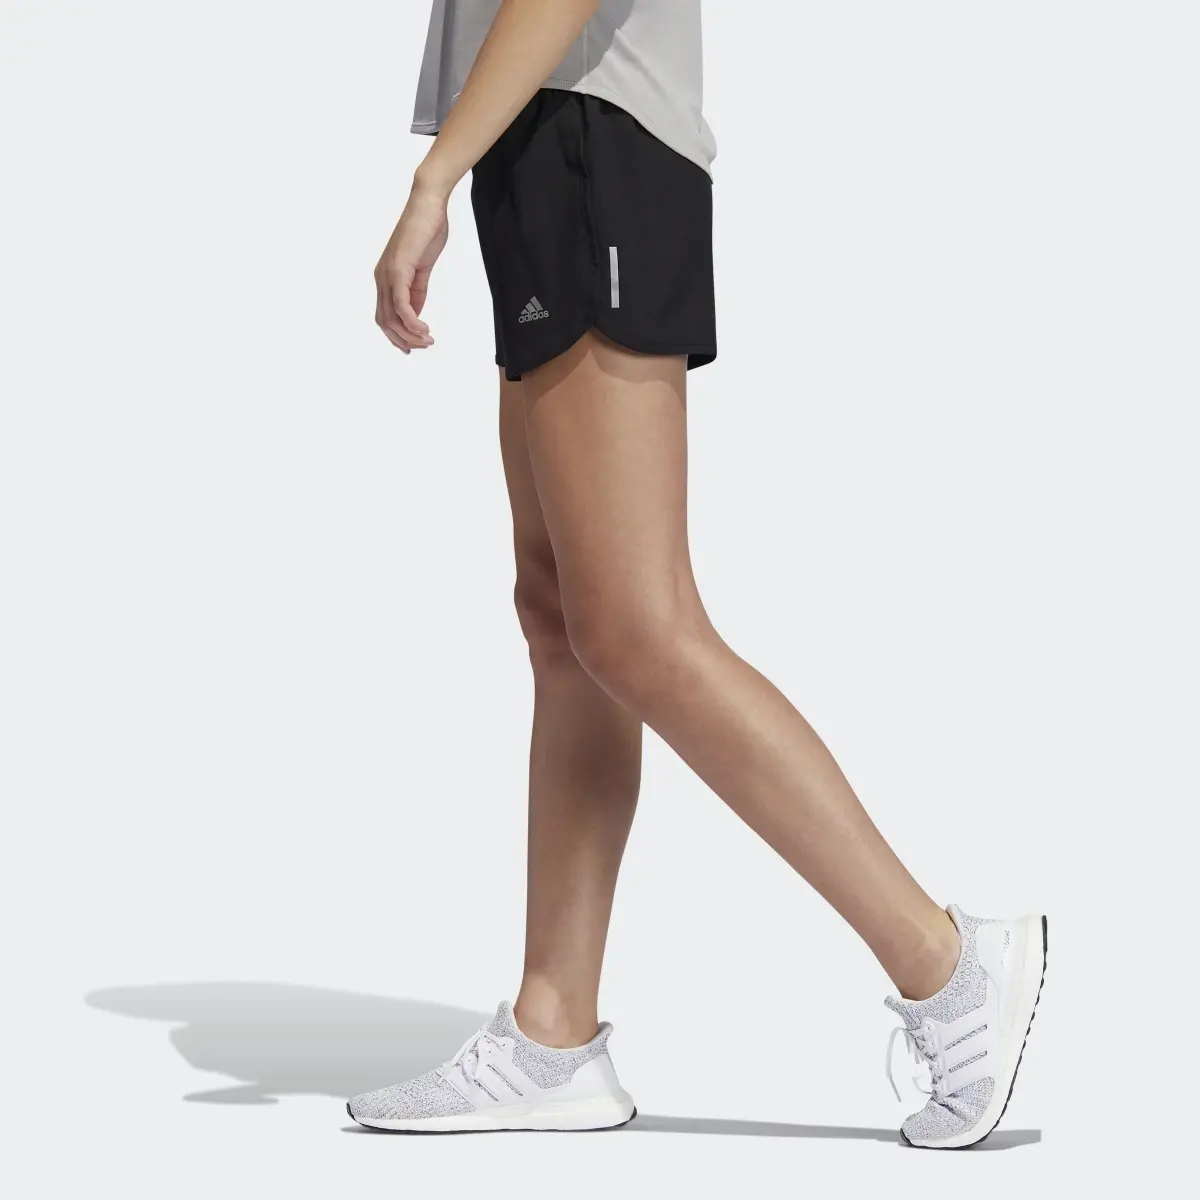 Adidas Running Shorts. 2